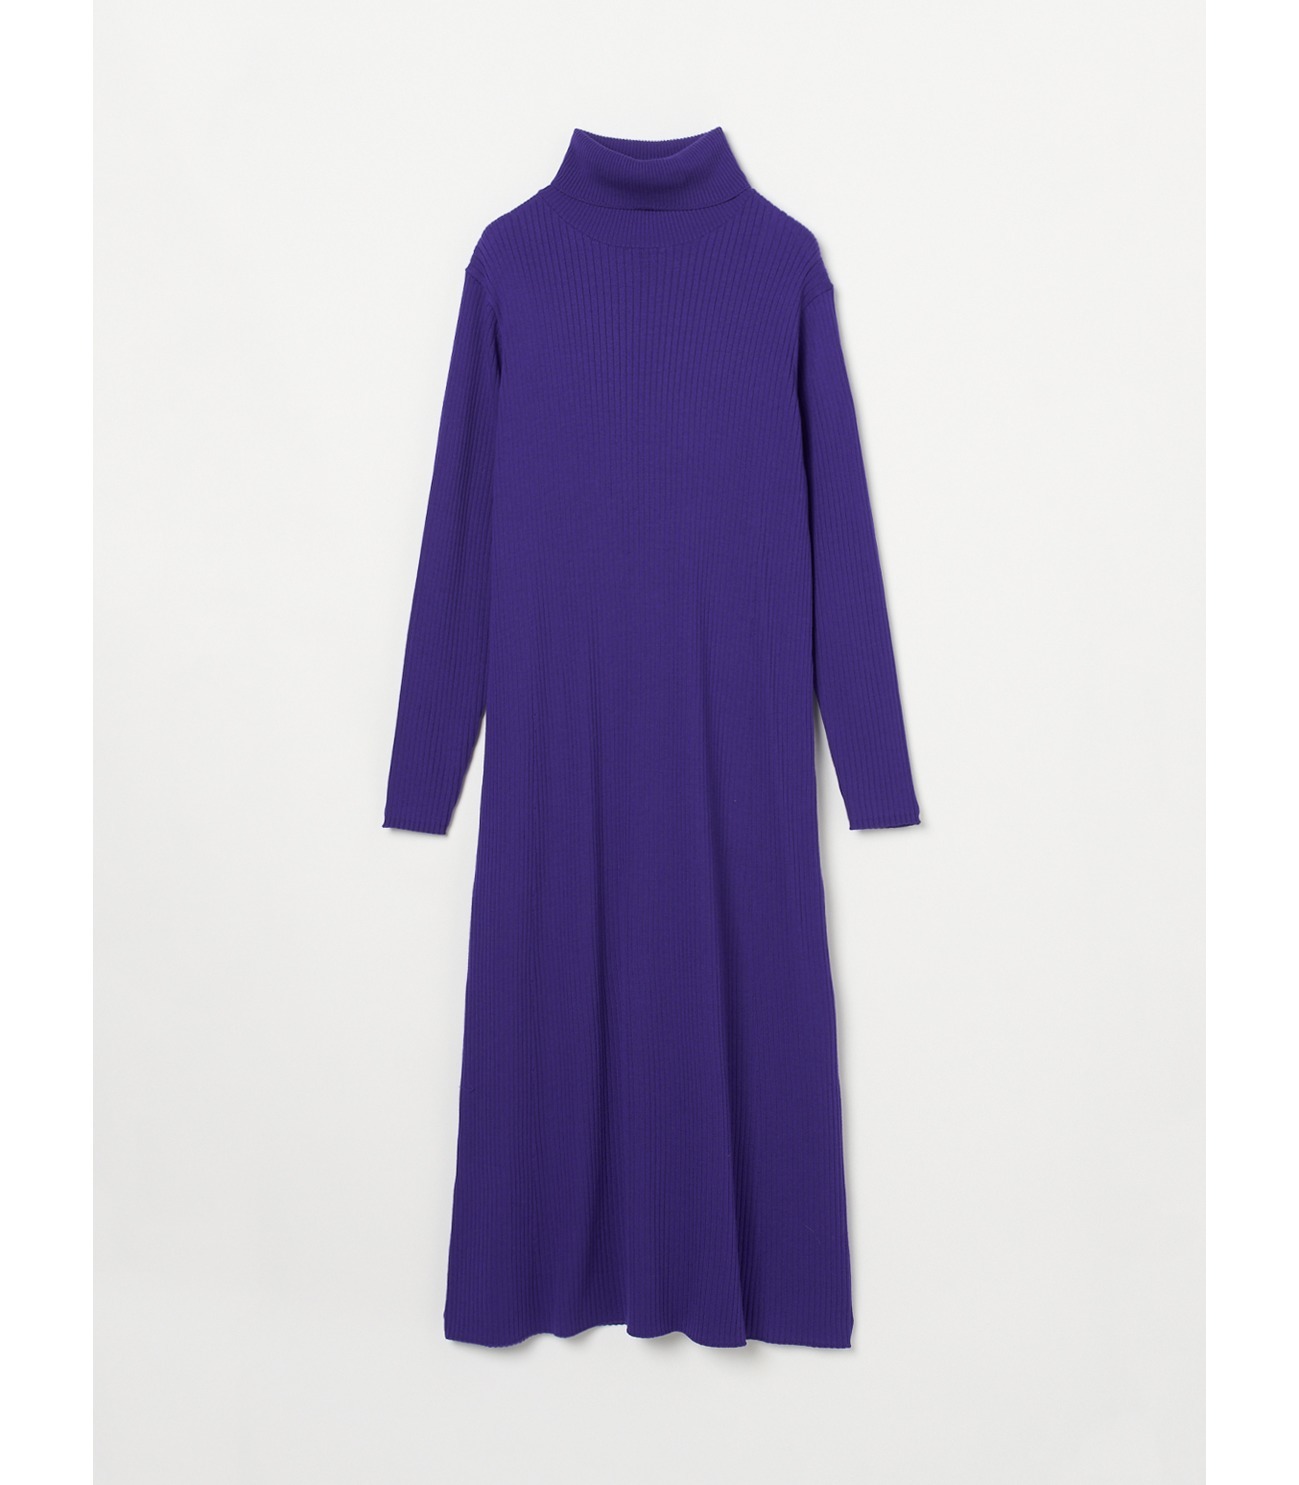 Wool outfit a-line long dress 詳細画像 blue purple 2